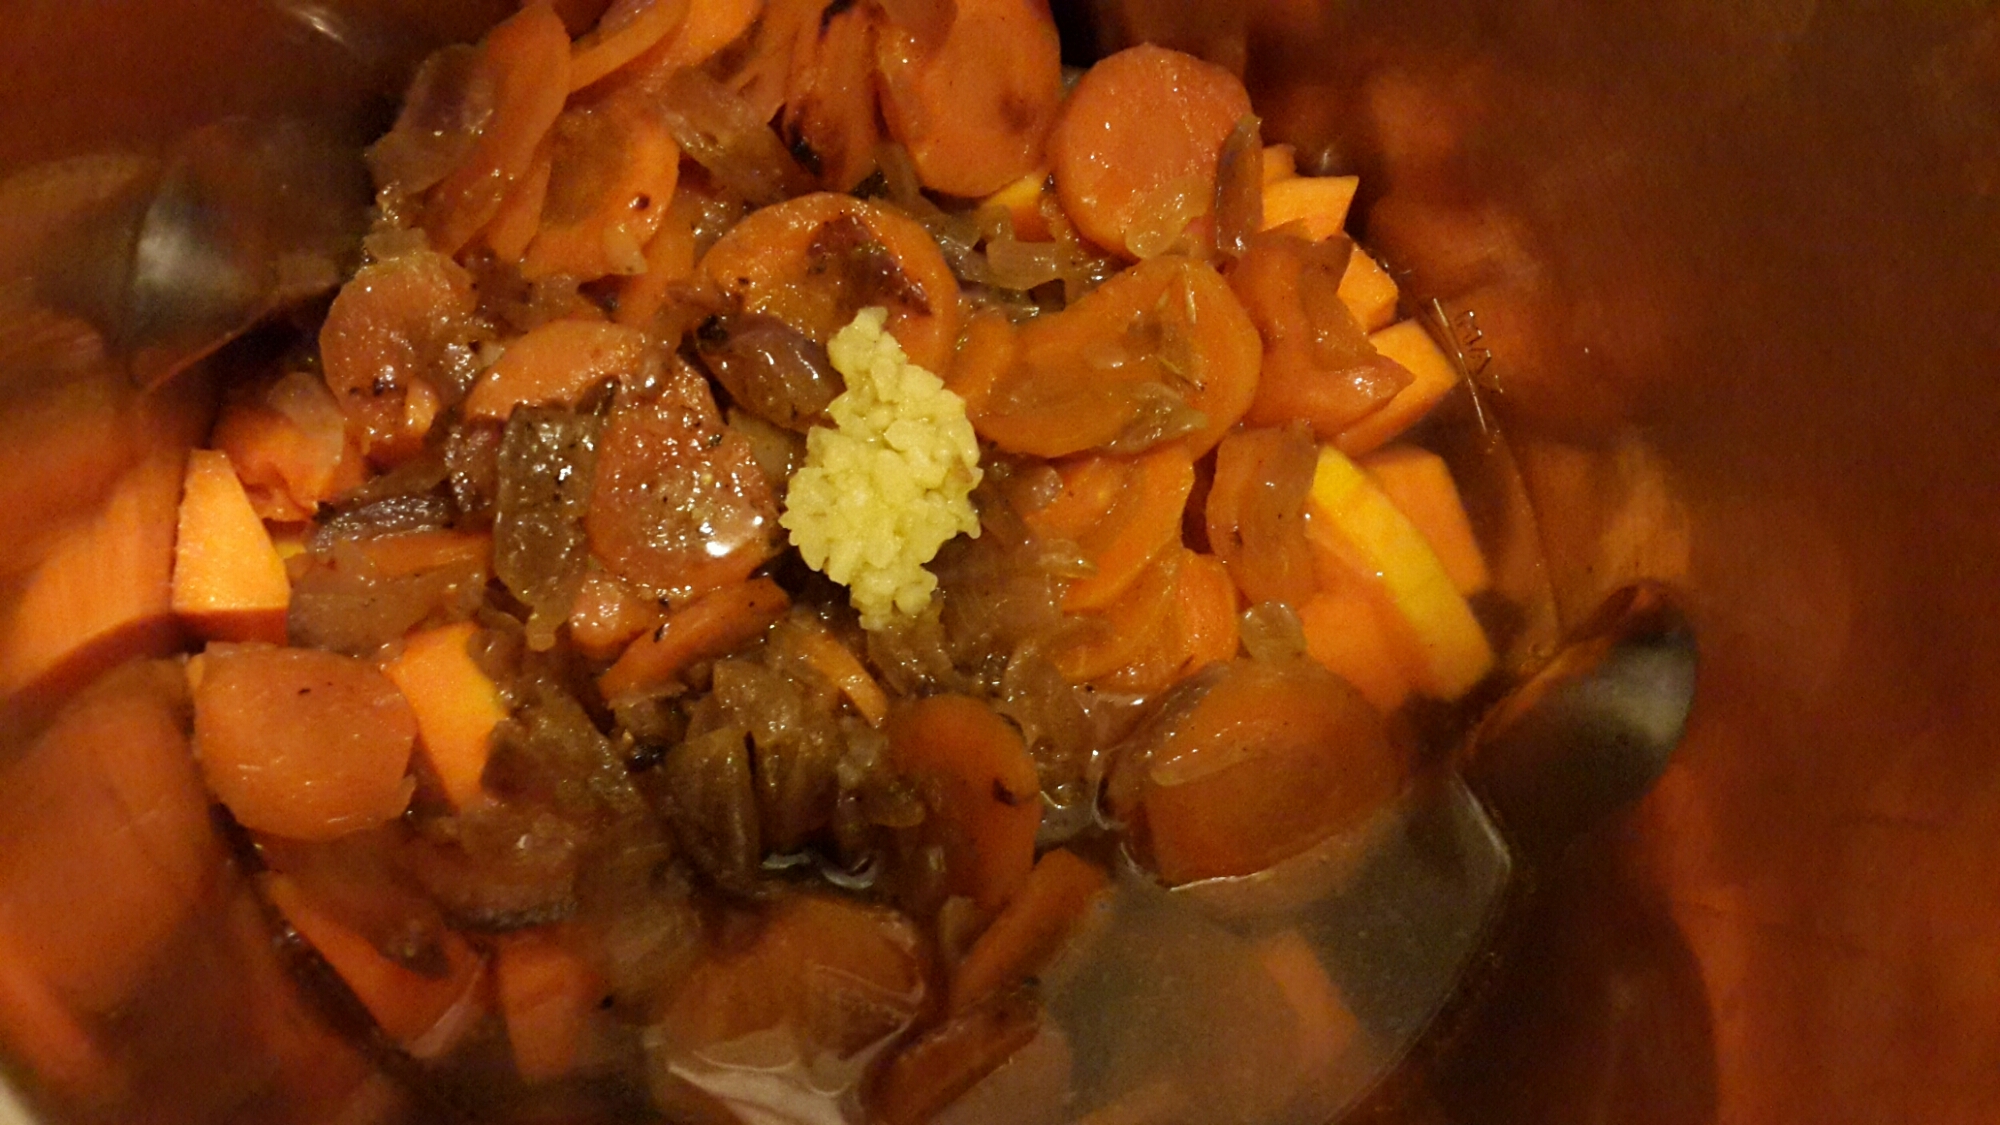 Sopa de calabaza con cebollas y zanahorias rehogadas.